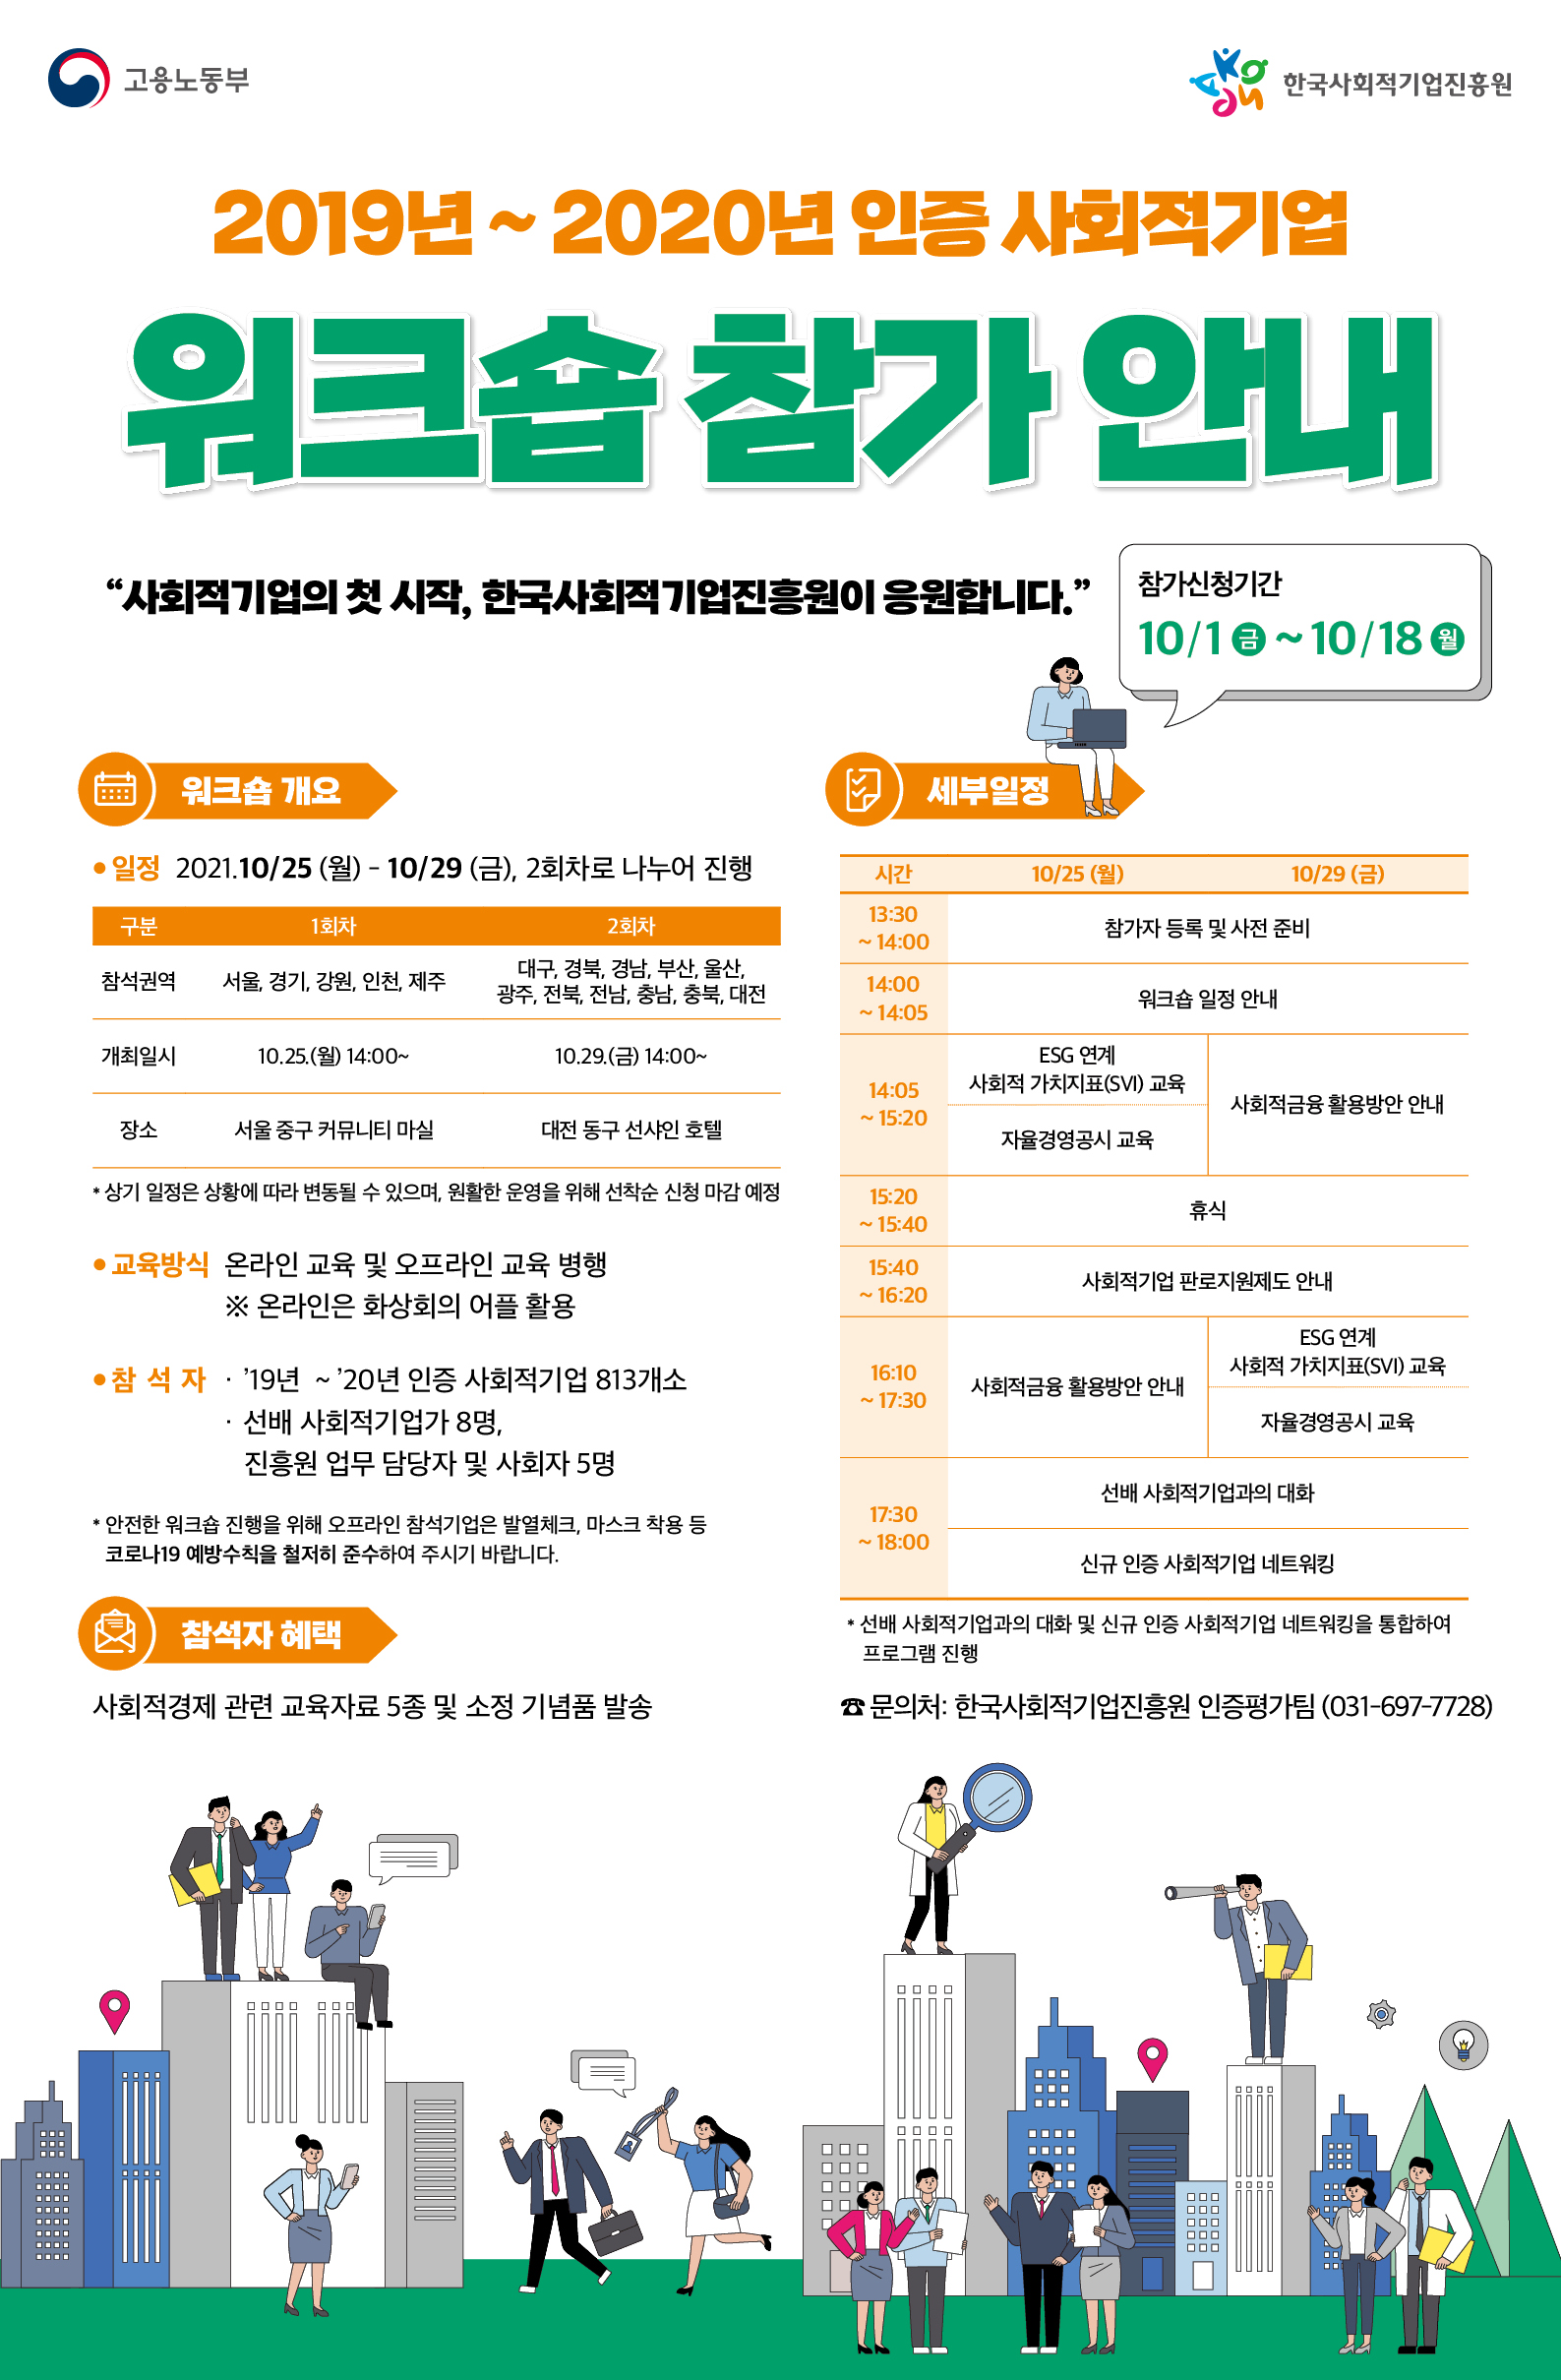 신규 인증 사회적기업 워크숍 개최 안내(~10.18 신청)